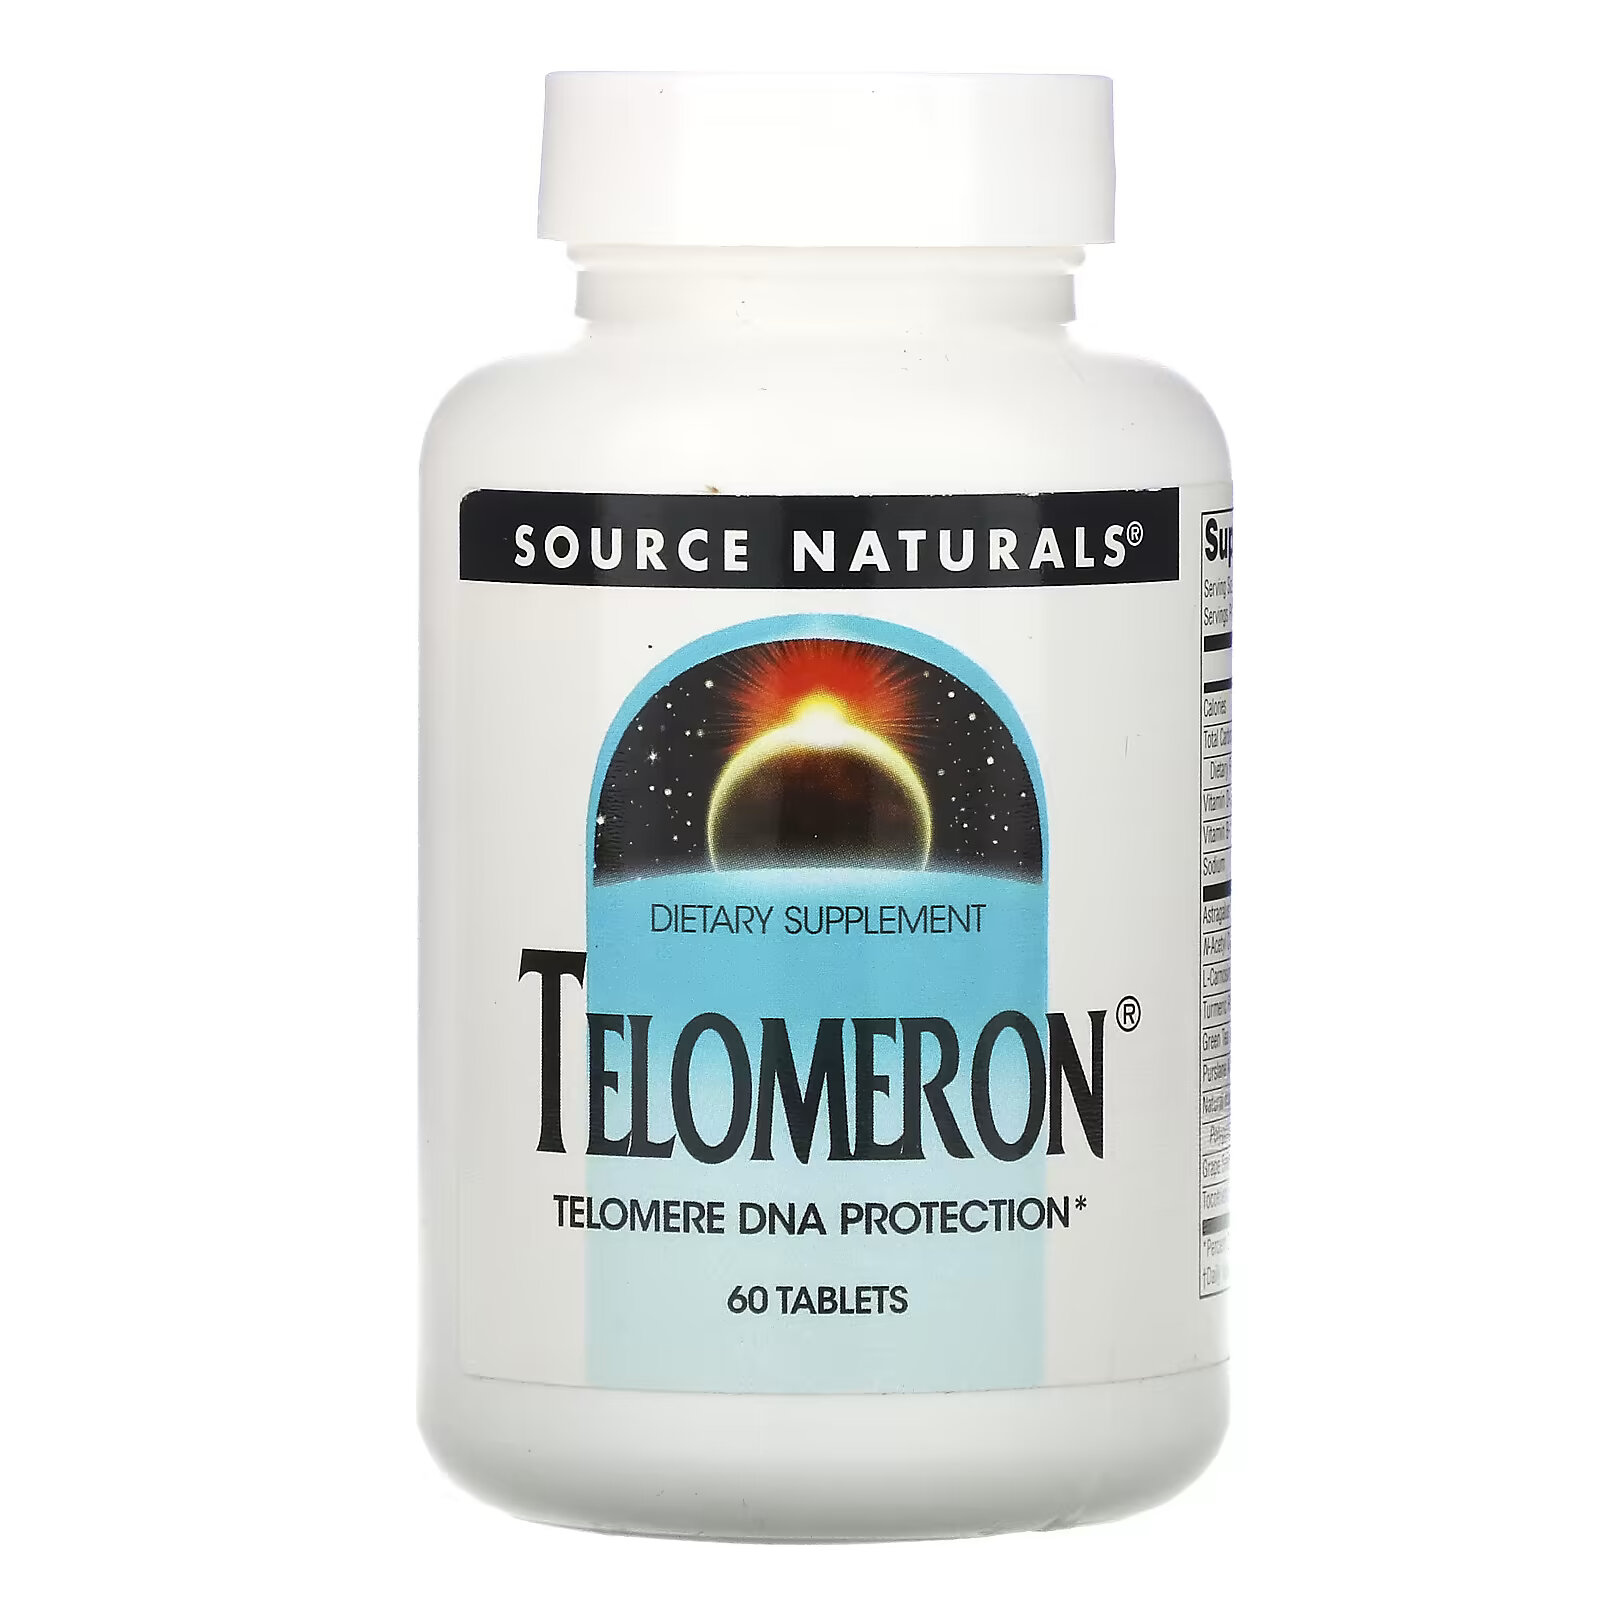 source naturals mega one высокоэффективный мультивитамин с минералами 60 таблеток Source Naturals, Теломерон 60 таблеток